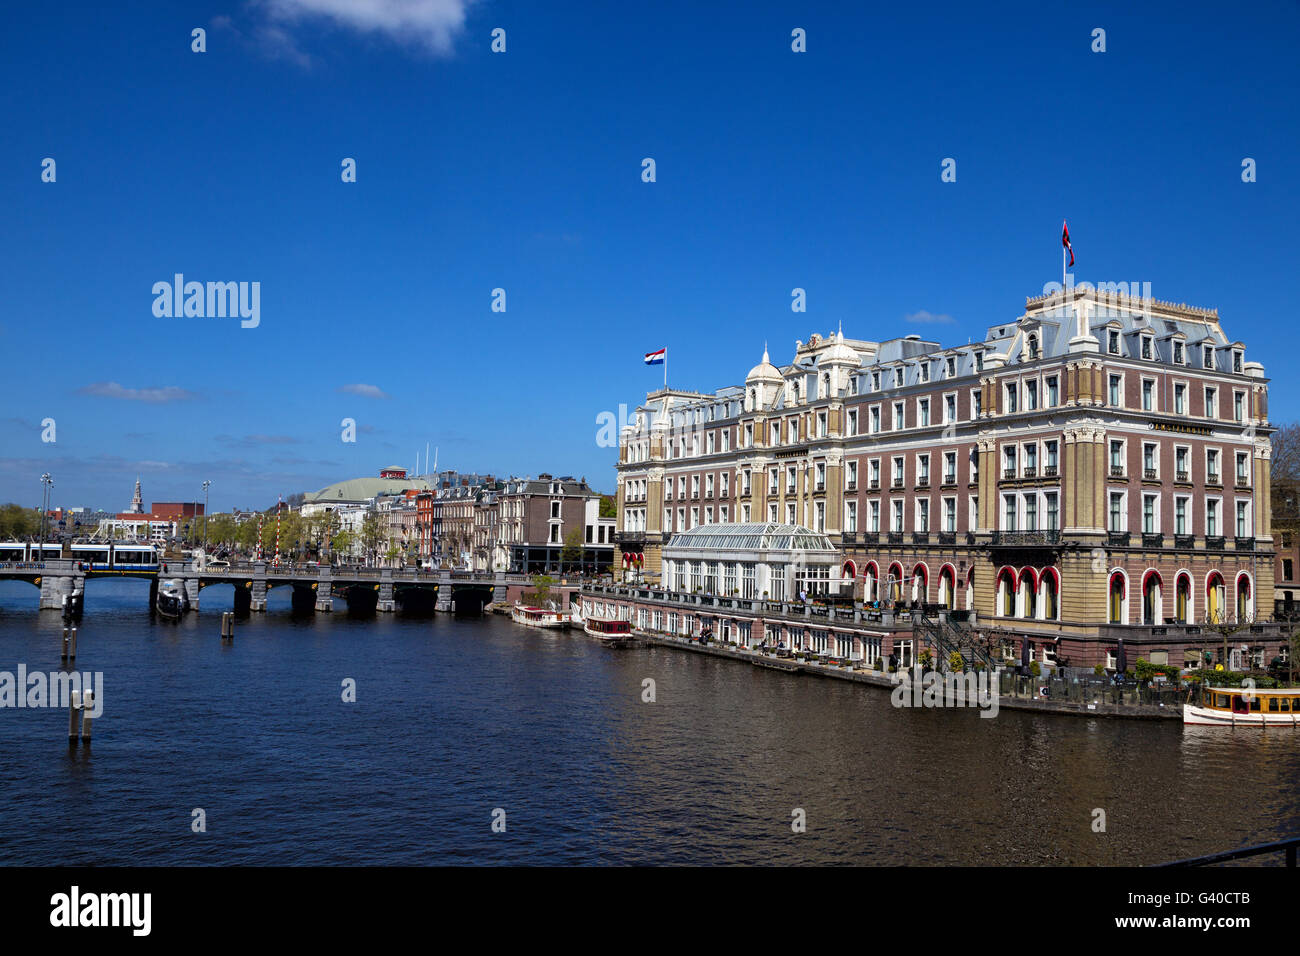 Intercontinental Amstel Hotel au bord de la rivière Amstel dans le centre-ville d'Amsterdam, Pays-Bas au printemps. Banque D'Images